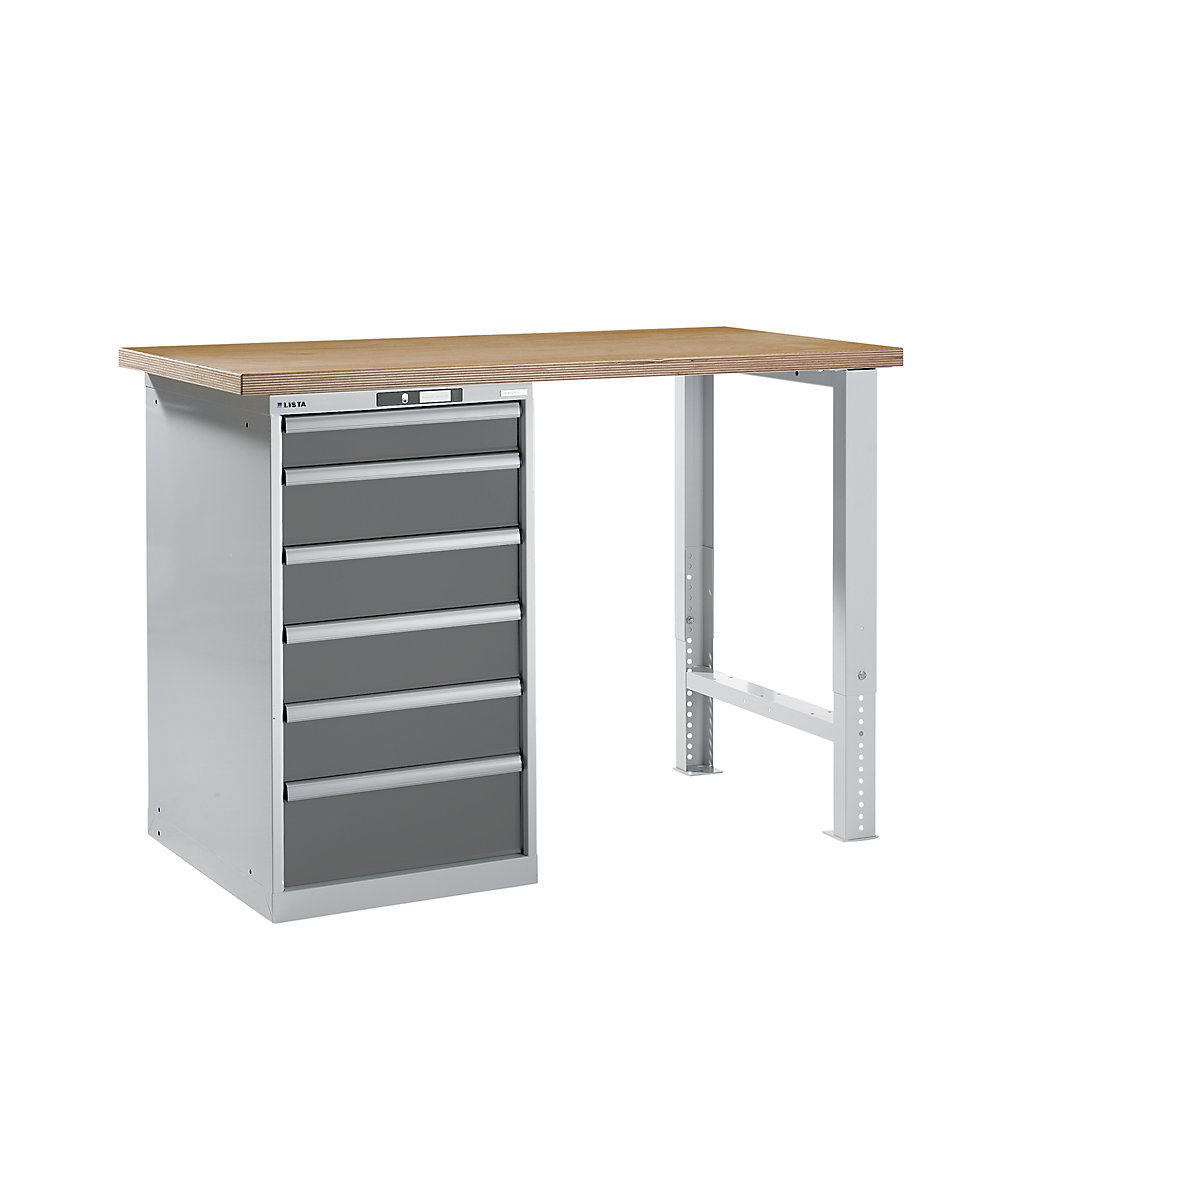 Dílenský stůl ve stavebnicovém systému – LISTA, výška 1040 mm, podstavná skříňka, 6 zásuvky, šedá metalíza, šířka stolu 1500 mm-9